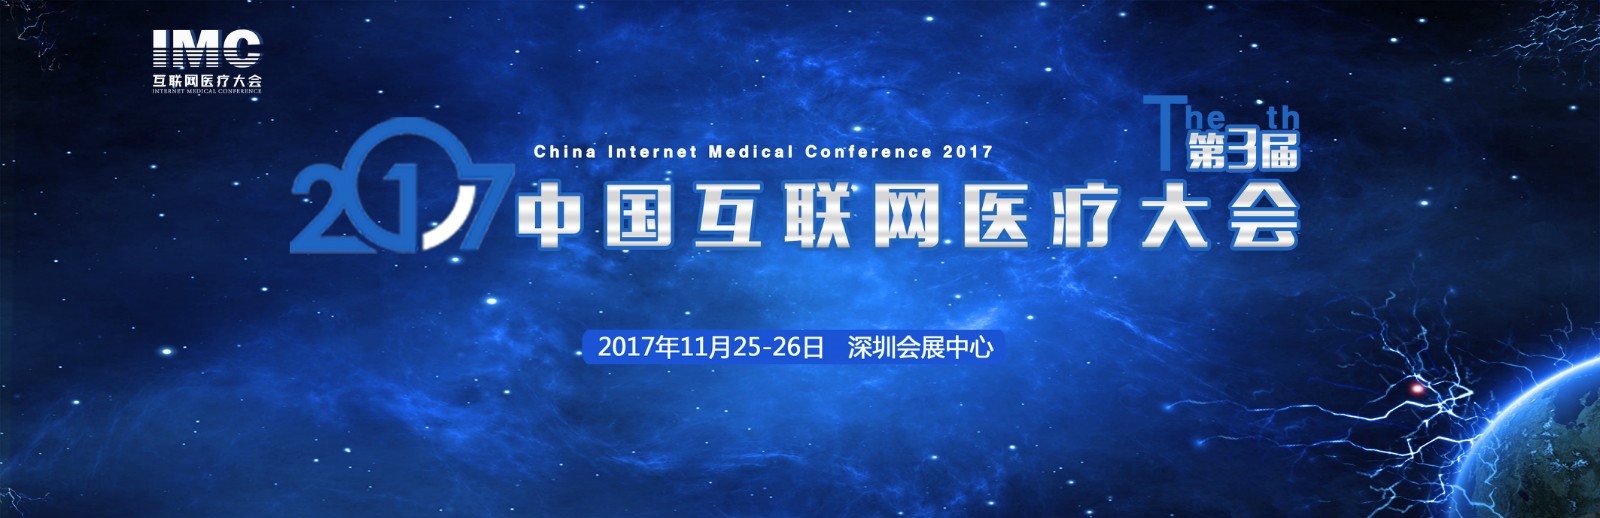 2017第三届中国互联网医疗大会暨互联网医疗创新展将于11月25日深圳会展中心召开